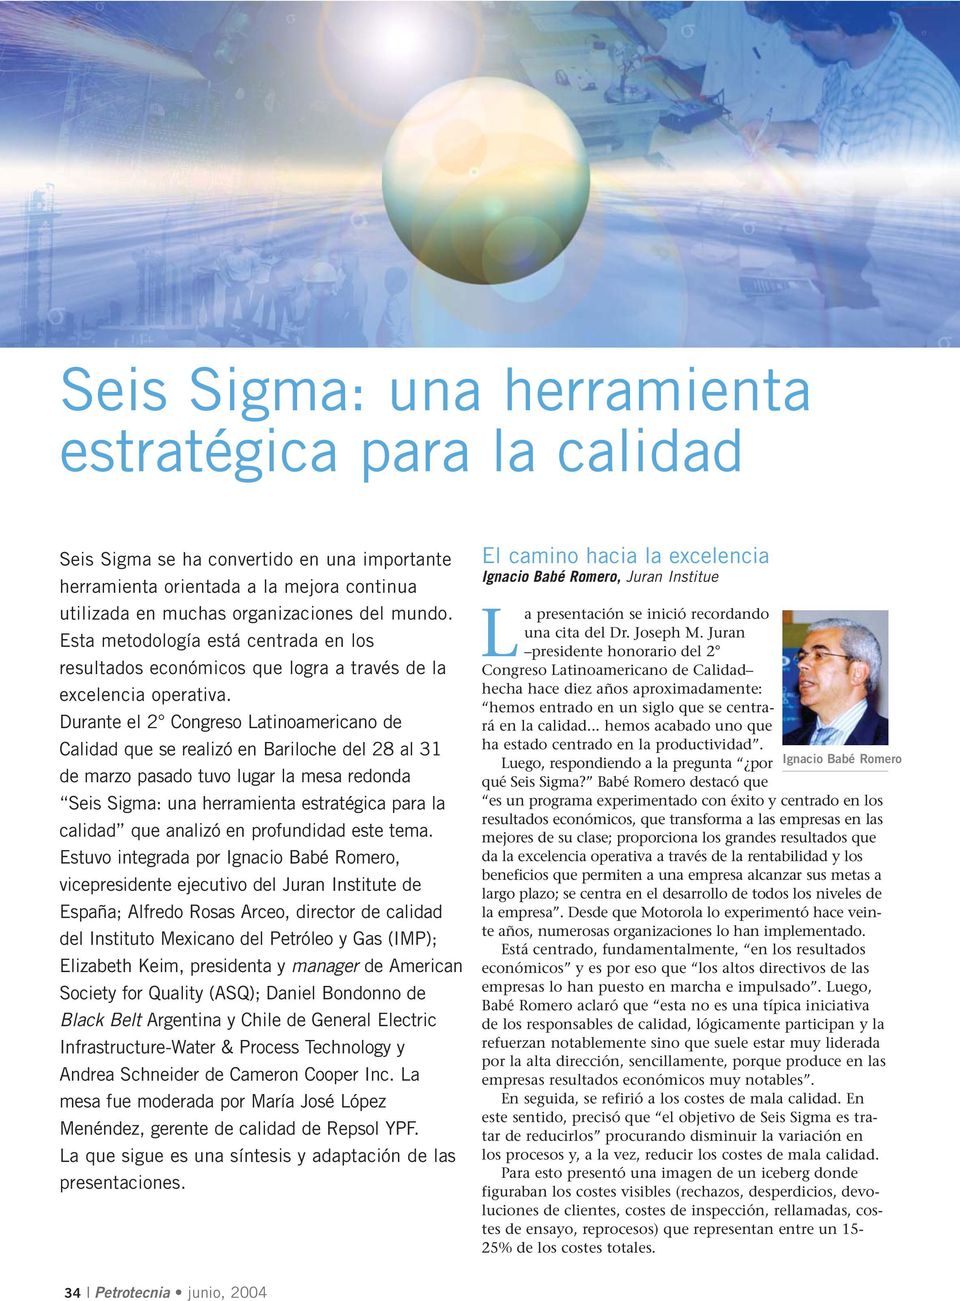 Durante el 2 Congreso Latinoamericano de Calidad que se realizó en Bariloche del 28 al 31 de marzo pasado tuvo lugar la mesa redonda Seis Sigma: una herramienta estratégica para la calidad que